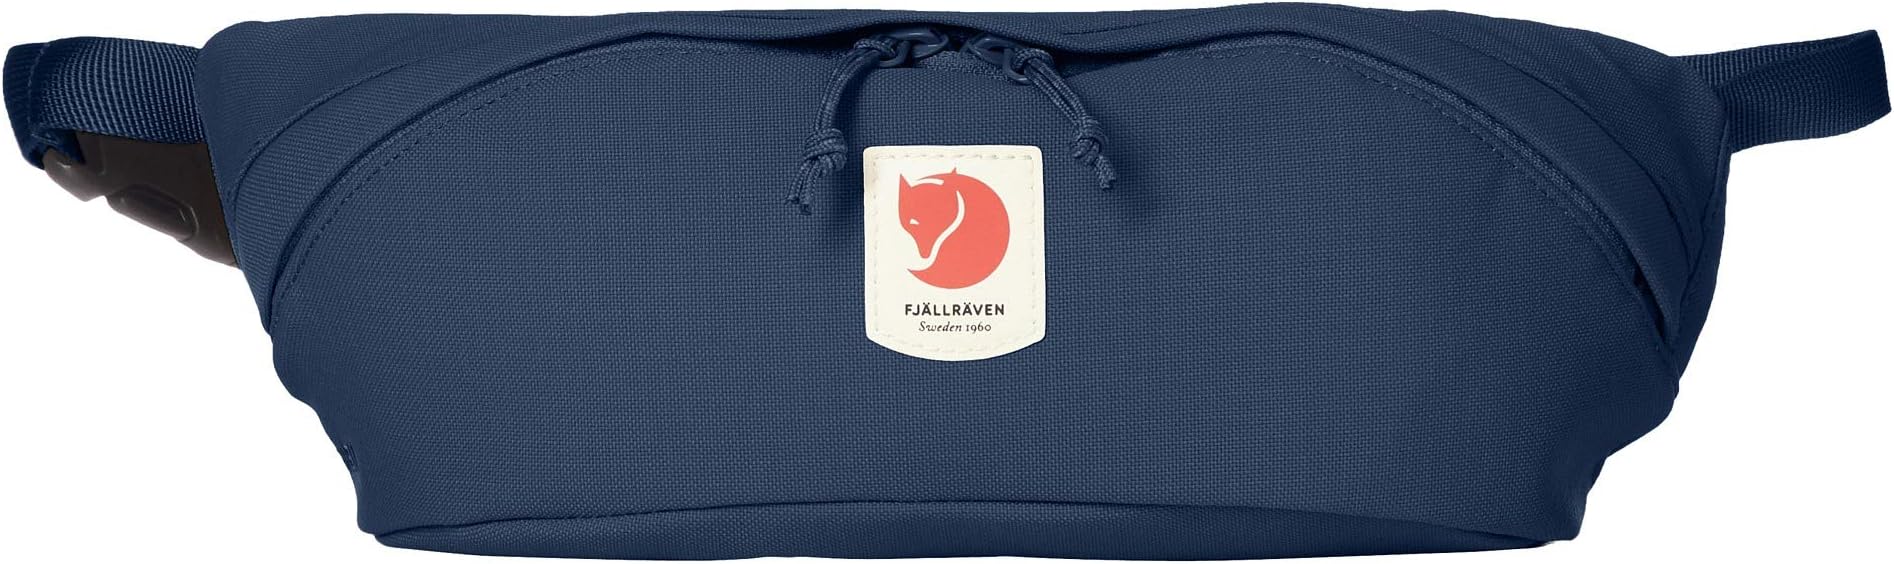 Сумка-рюкзак Ulvö среднего размера Fjällräven, цвет Mountain Blue сумка через плечо fjällräven ulvö 28 cm m цвет mountain blue